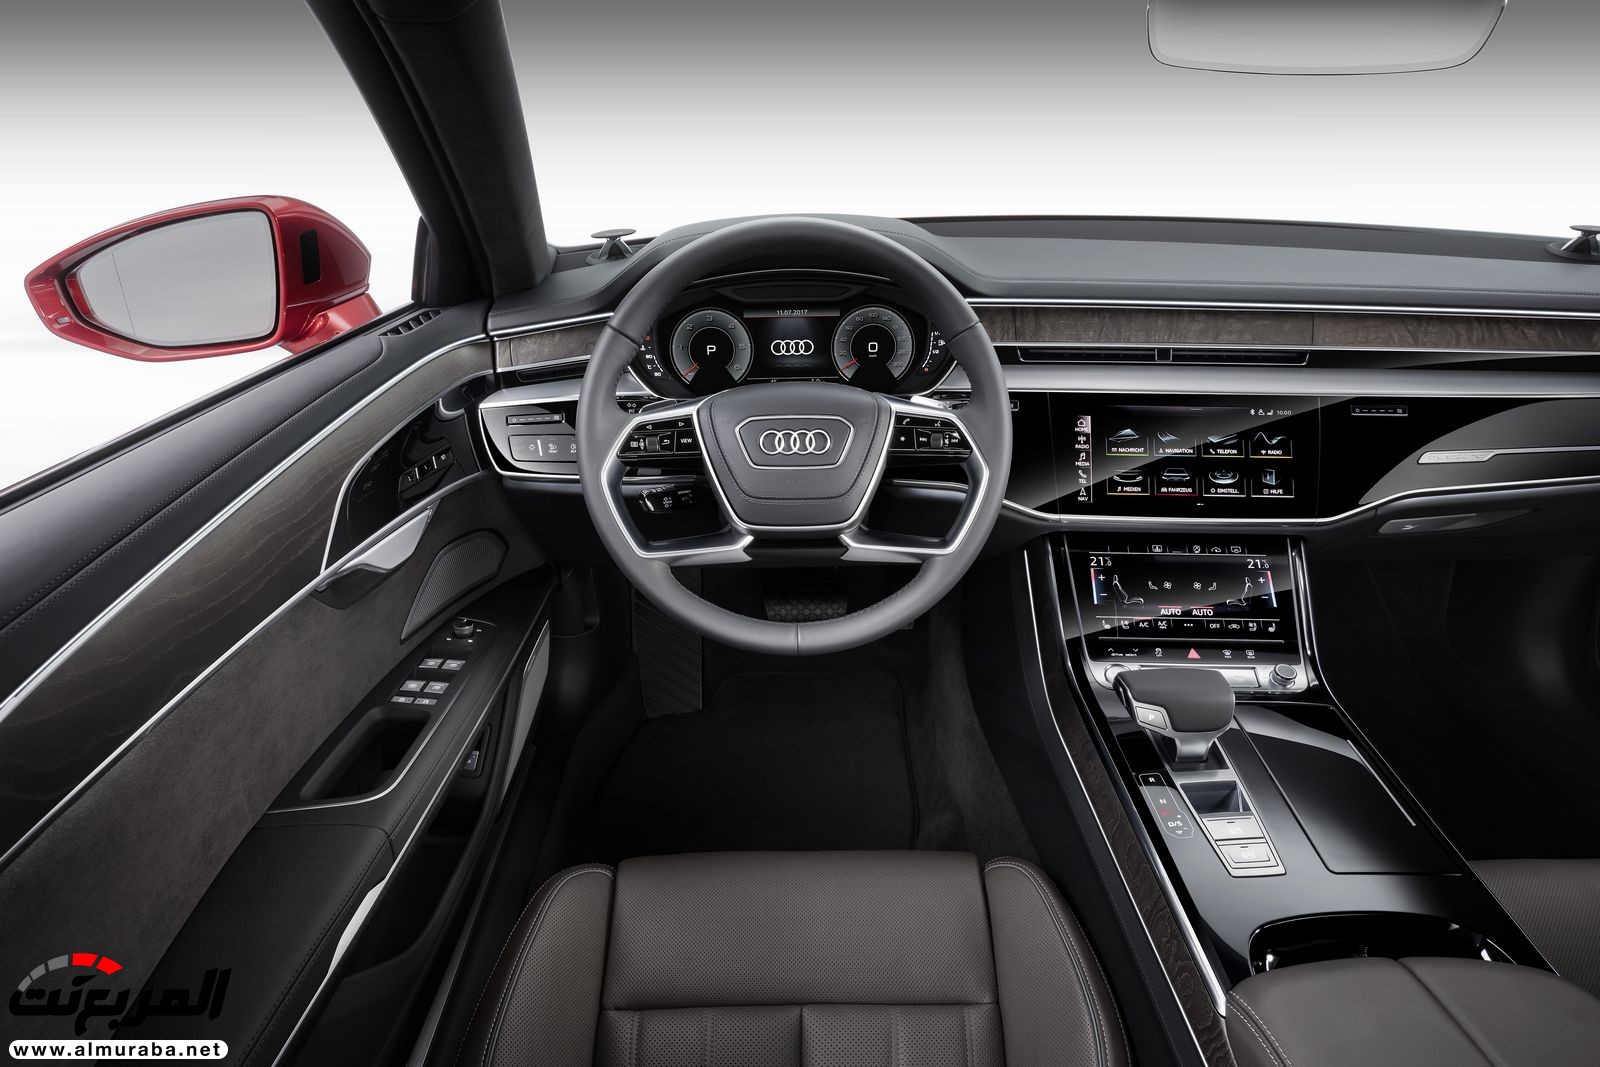 أودي A8 2018 الجديدة كلياً تكشف نفسها بتصميم وتقنيات متطورة "معلومات + 100 صورة" Audi A8 25